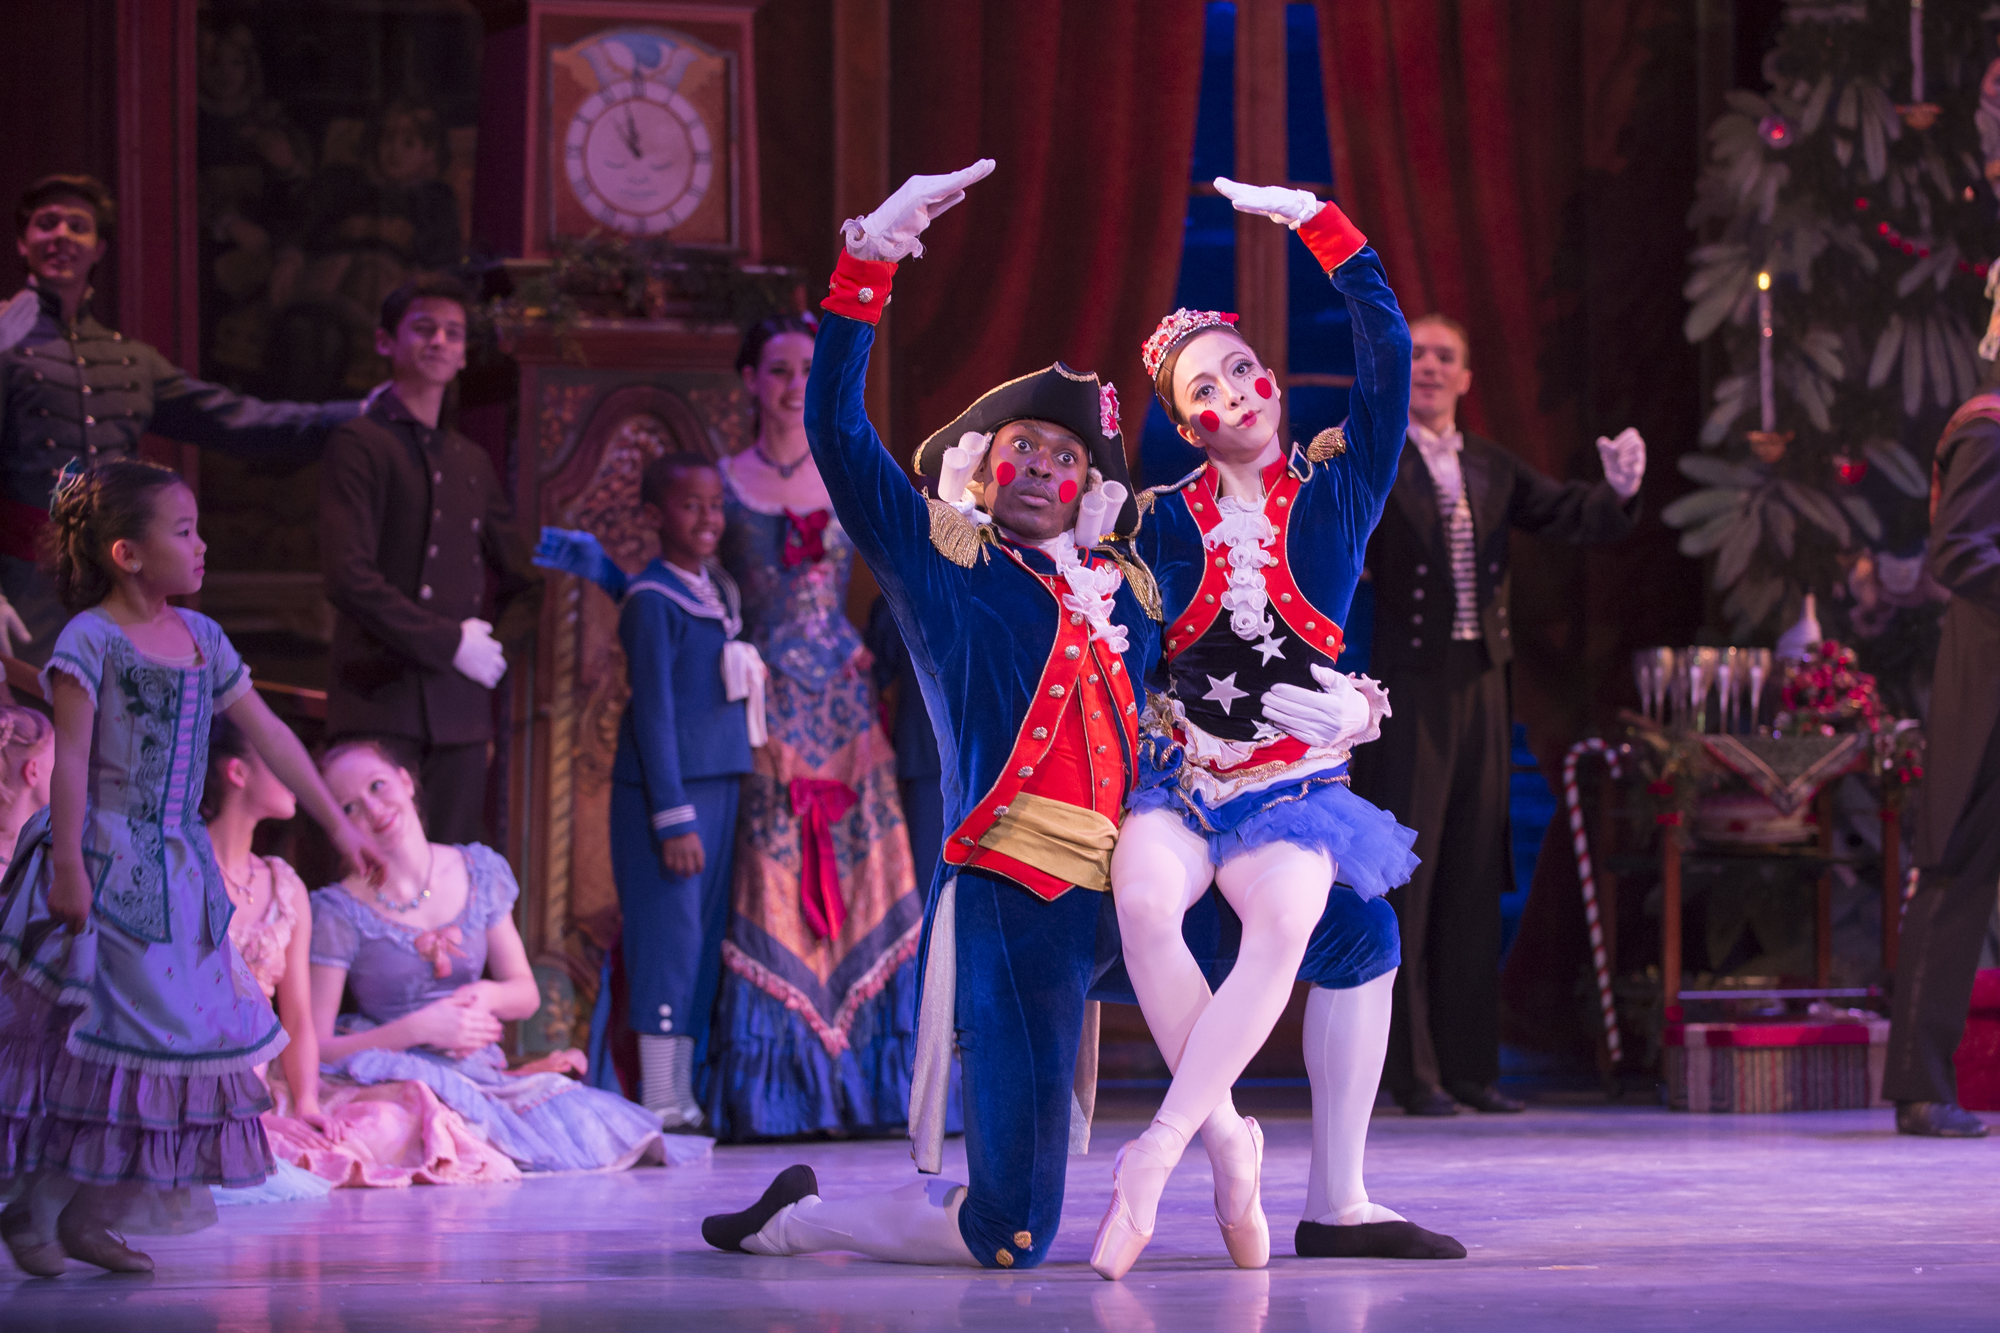 ‘Nutcracker’ ballet returns to Warner Theatre with D.C. twist